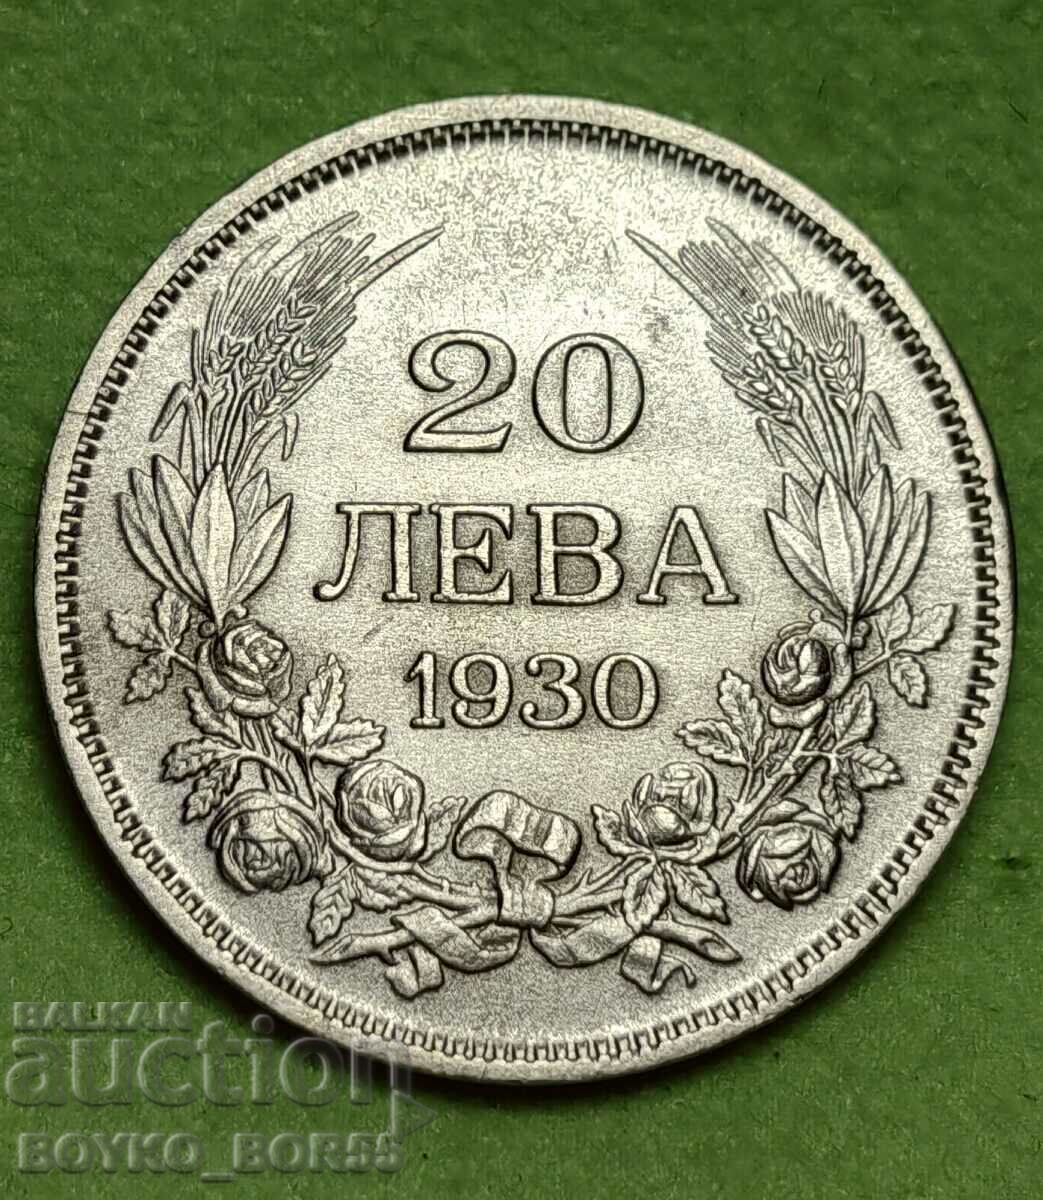 ΚΟΡΥΦΑΙΑ ΠΟΙΟΤΗΤΑ! Ασημένιο νόμισμα 20 Leva 1930